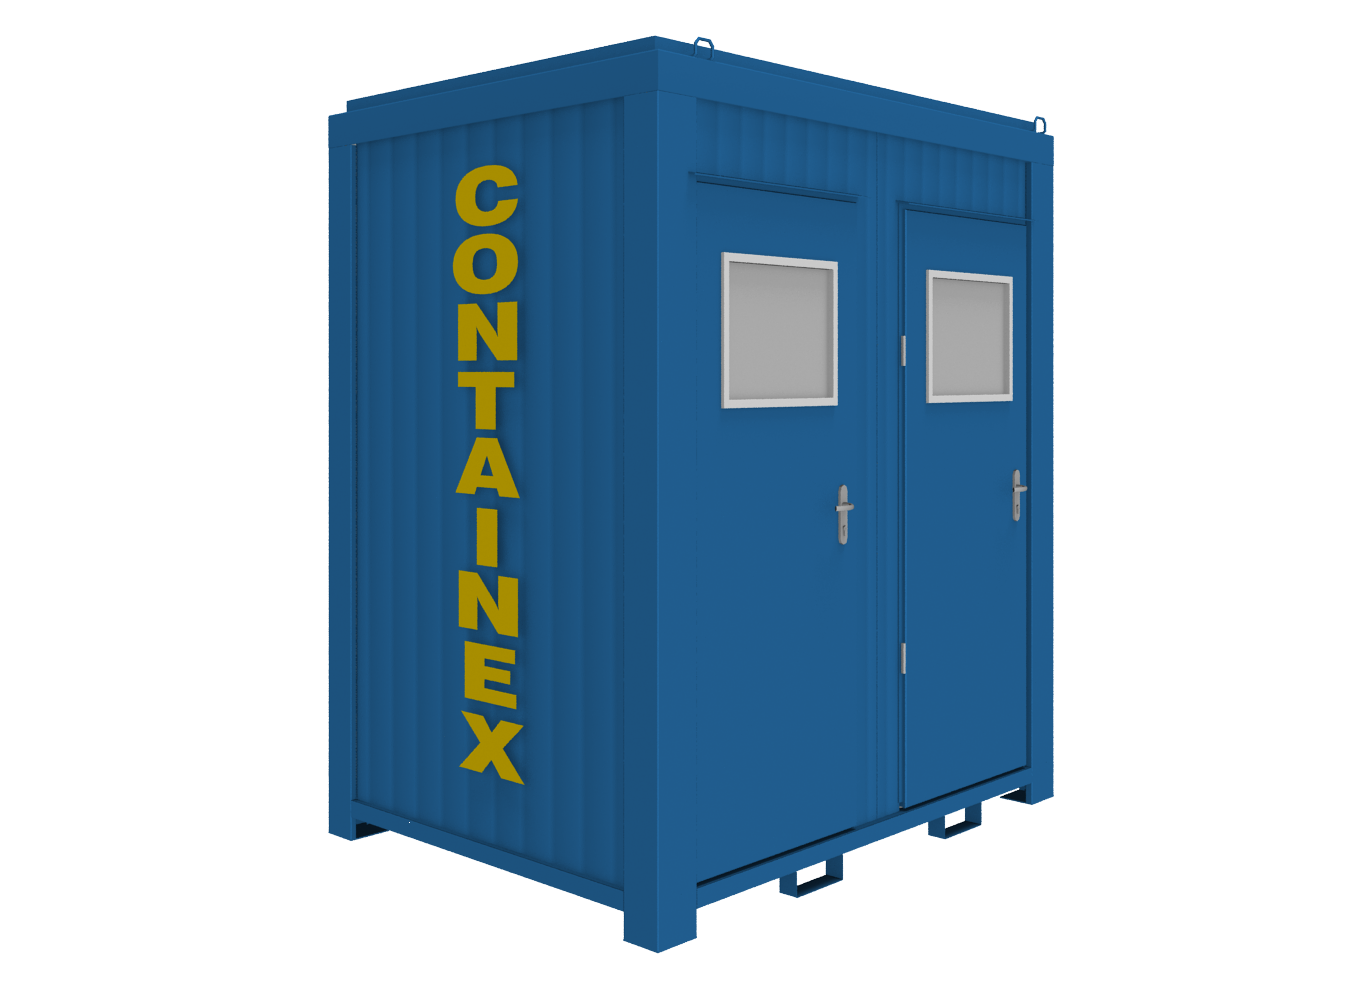 Включи контейнер 2. CONTAINEX сантехнический модуль. Туалетные контейнеры CONTAINEX. Сантехнические контейнеры CONTAINEX спецификация. Туалет из контейнера 5 тонн.